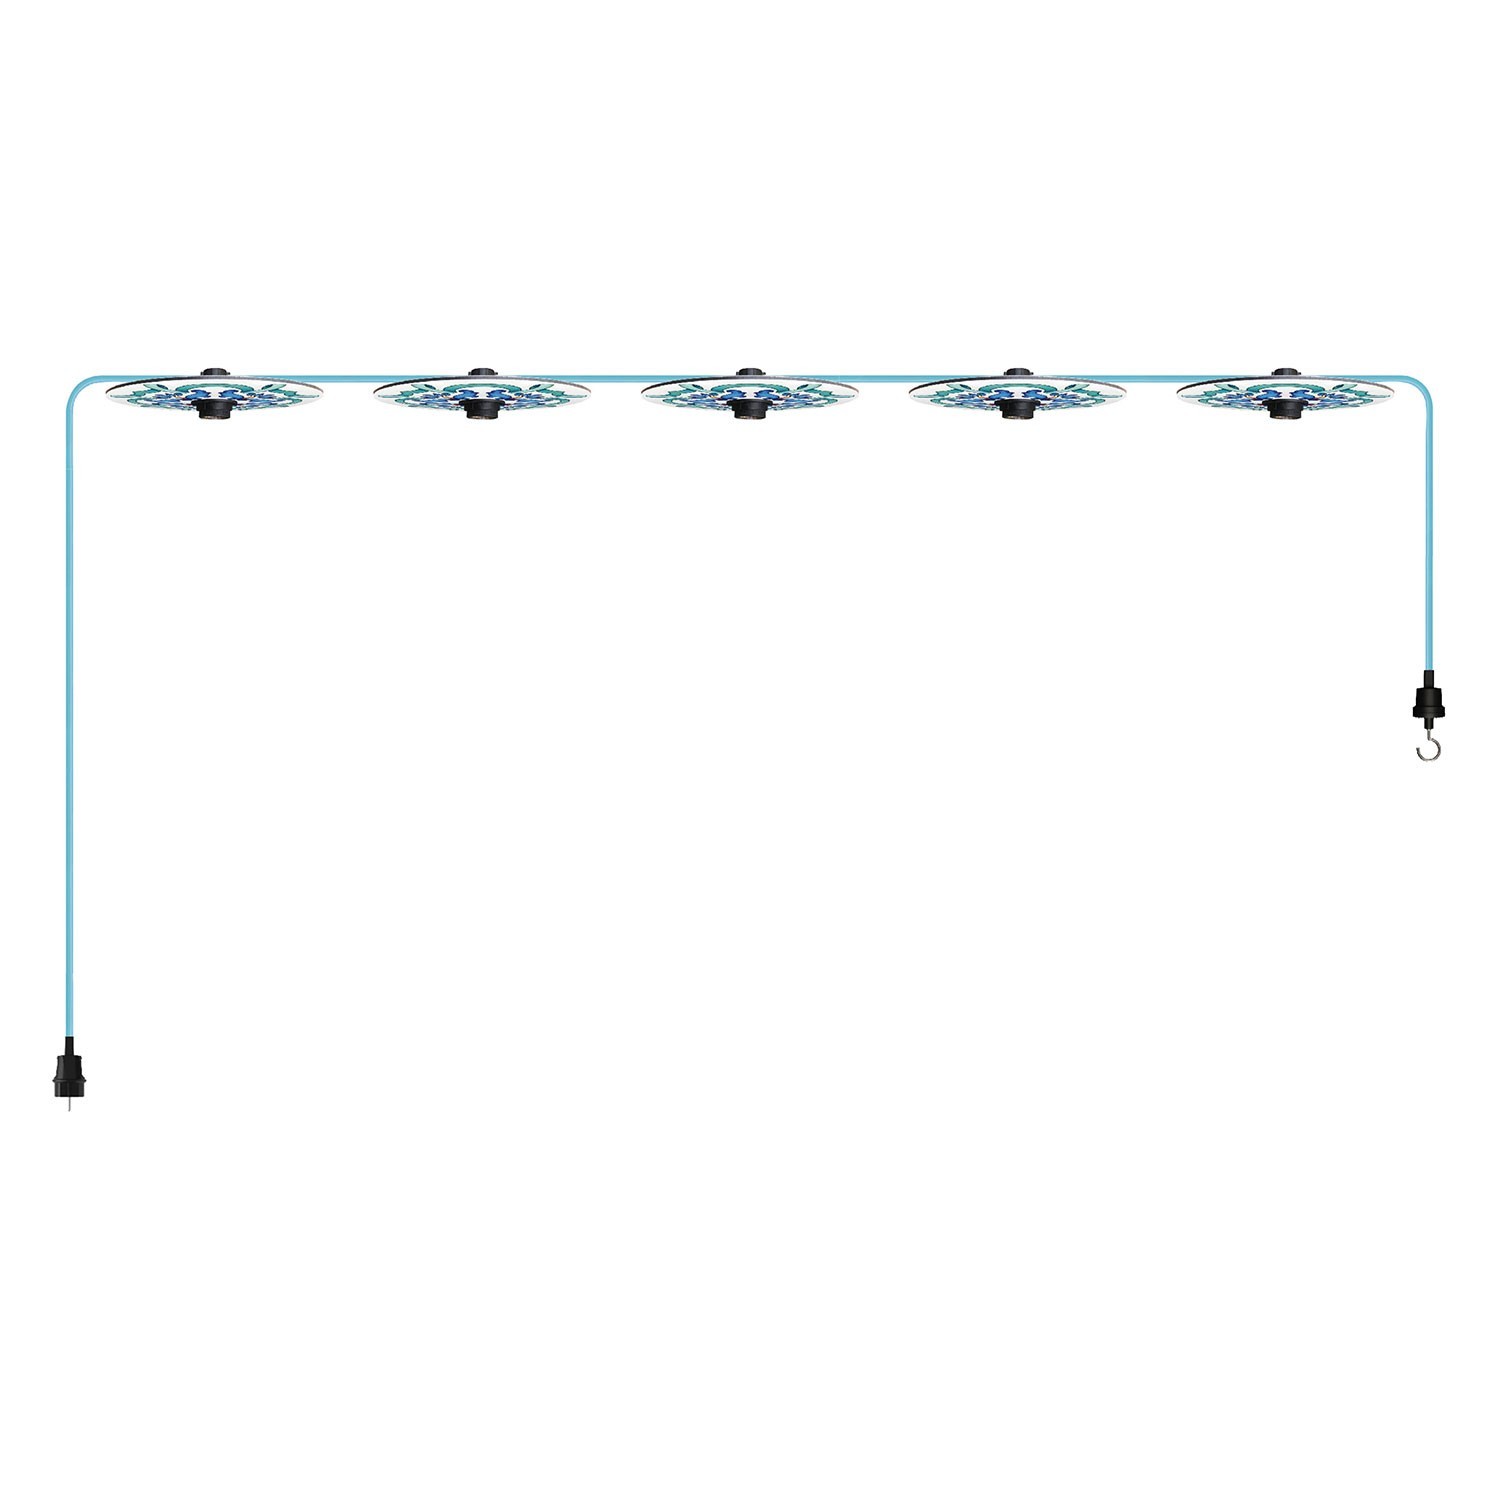 Maioliche' String Light Lumet System fra 7,5 m med stofkabel, 5 lampeholdere og lampeskærme, krog og sort stik